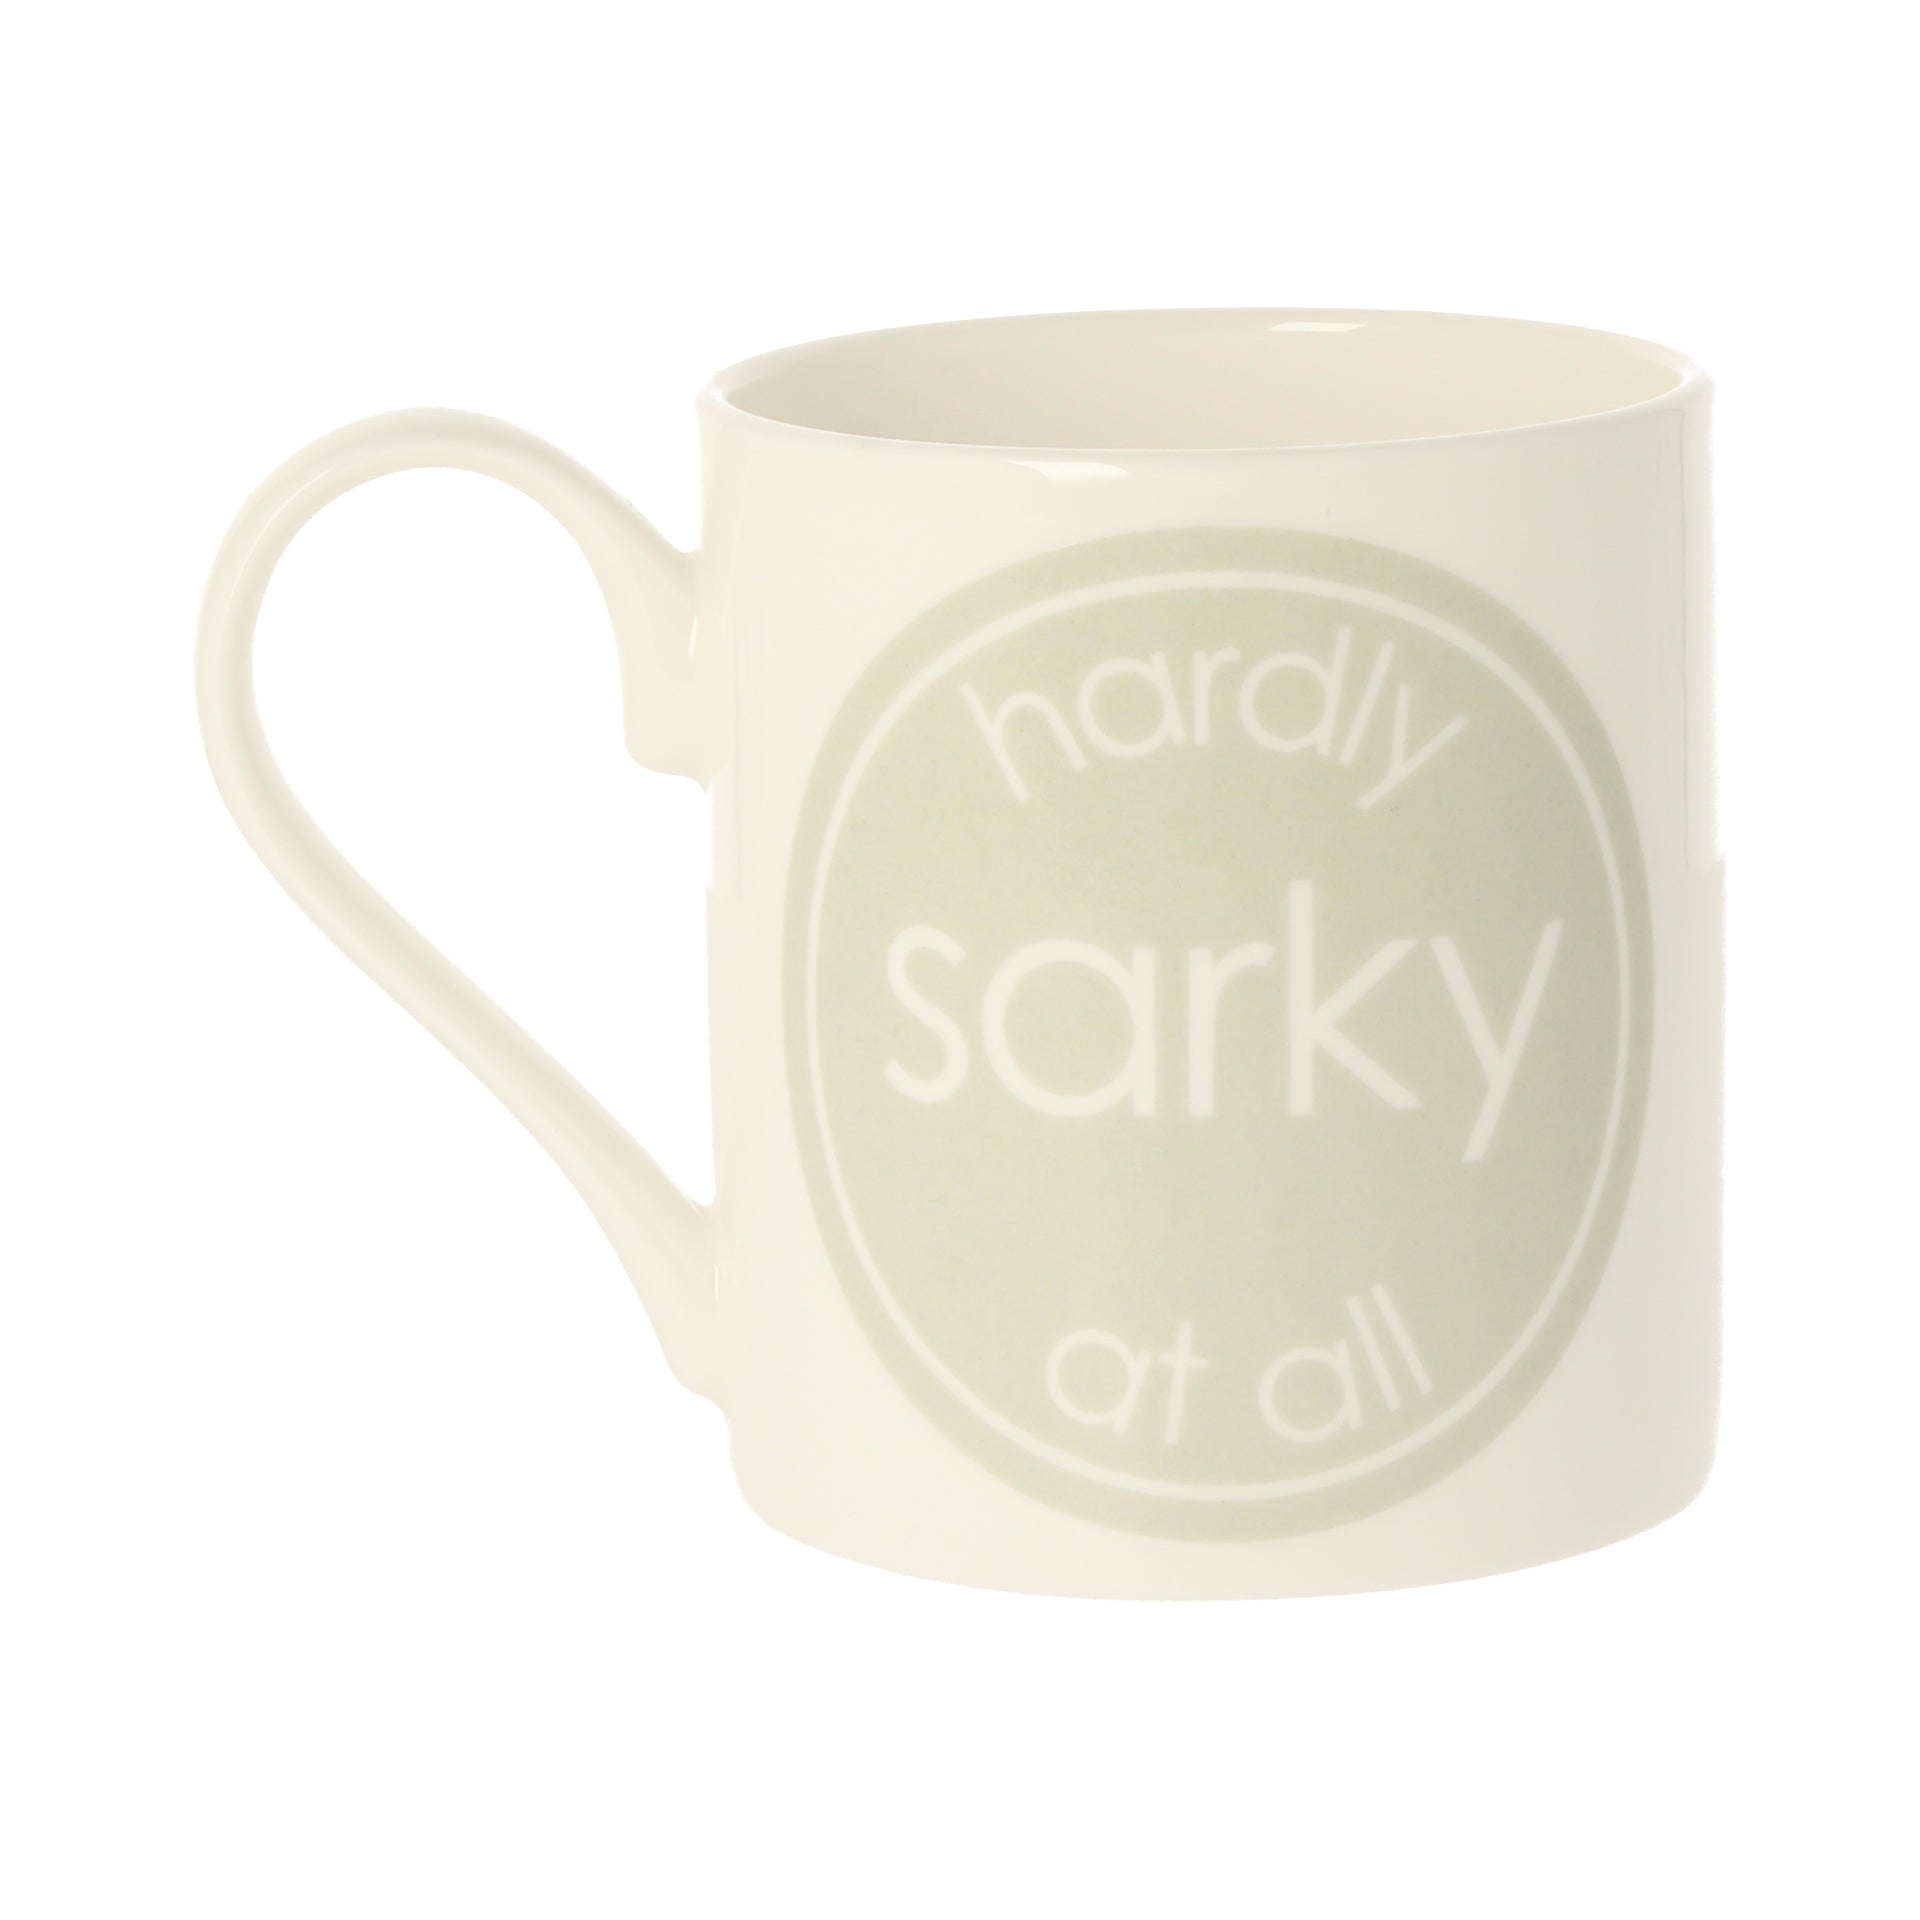 Hardly Sarky At All Mug